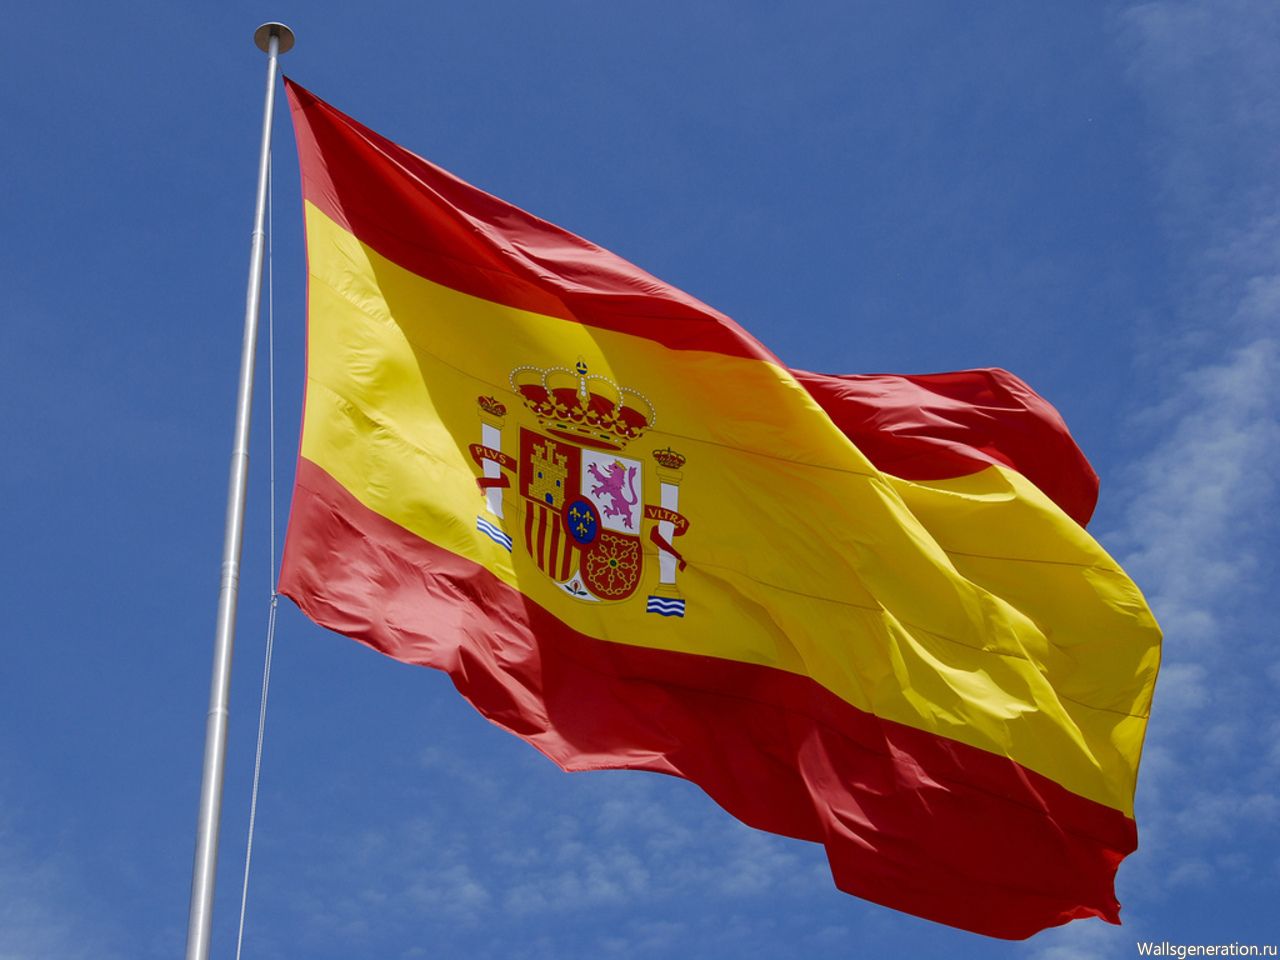 Власти Испании повысили уровень террористической угрозы до трех баллов по четырехбальной шкале